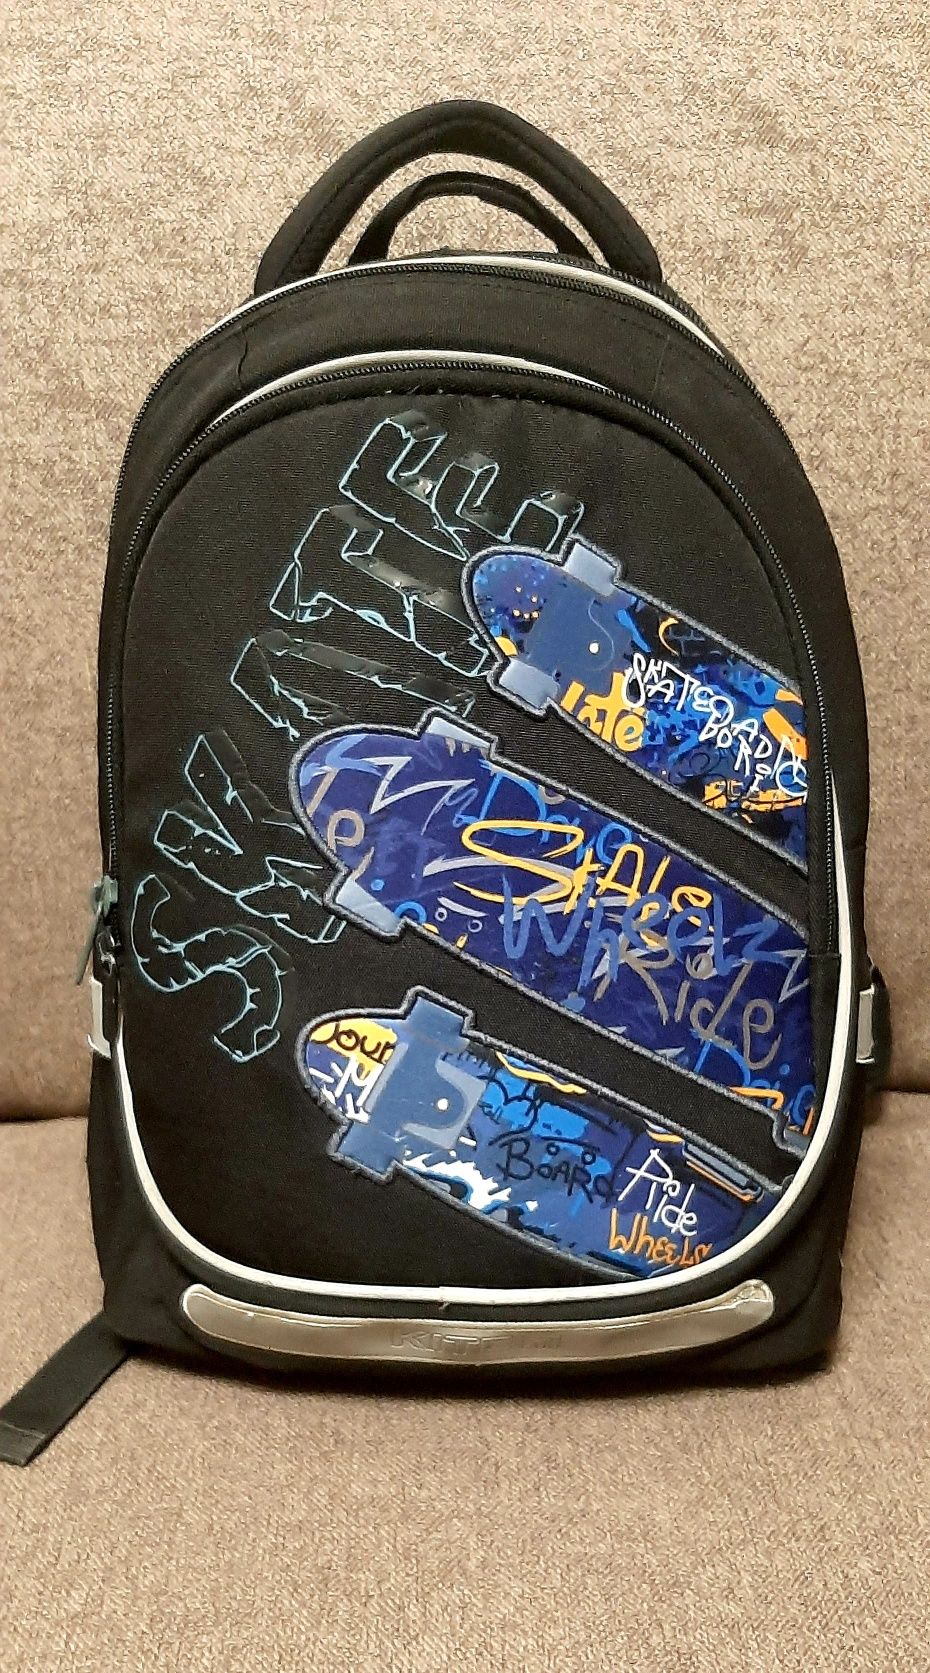 Шкільний рюкзак Kite